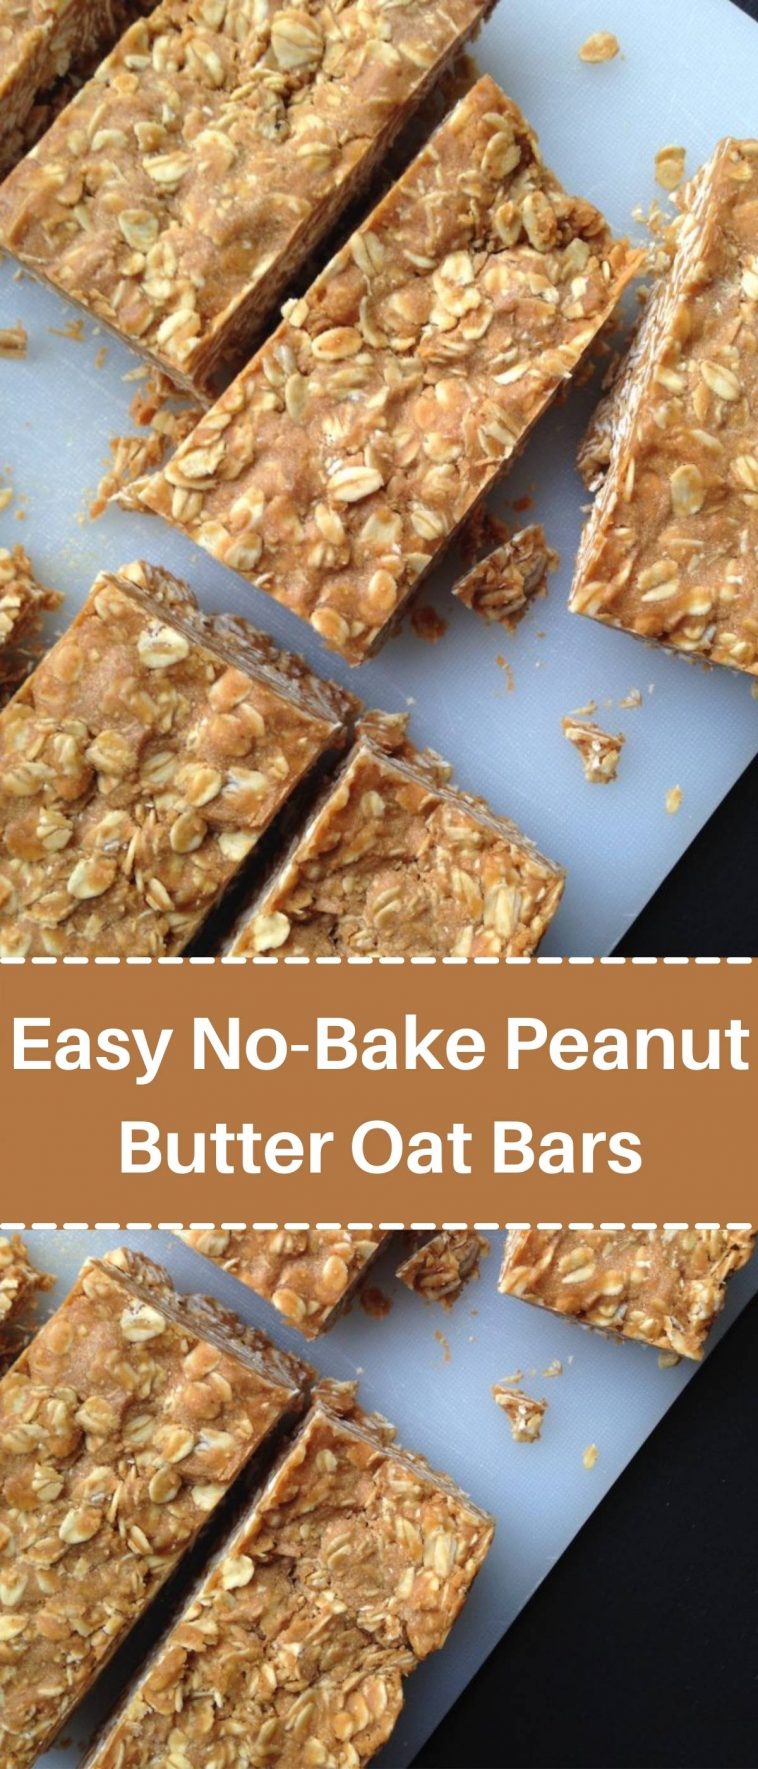 Easy No-Bake Peanut Butter Oat Bars